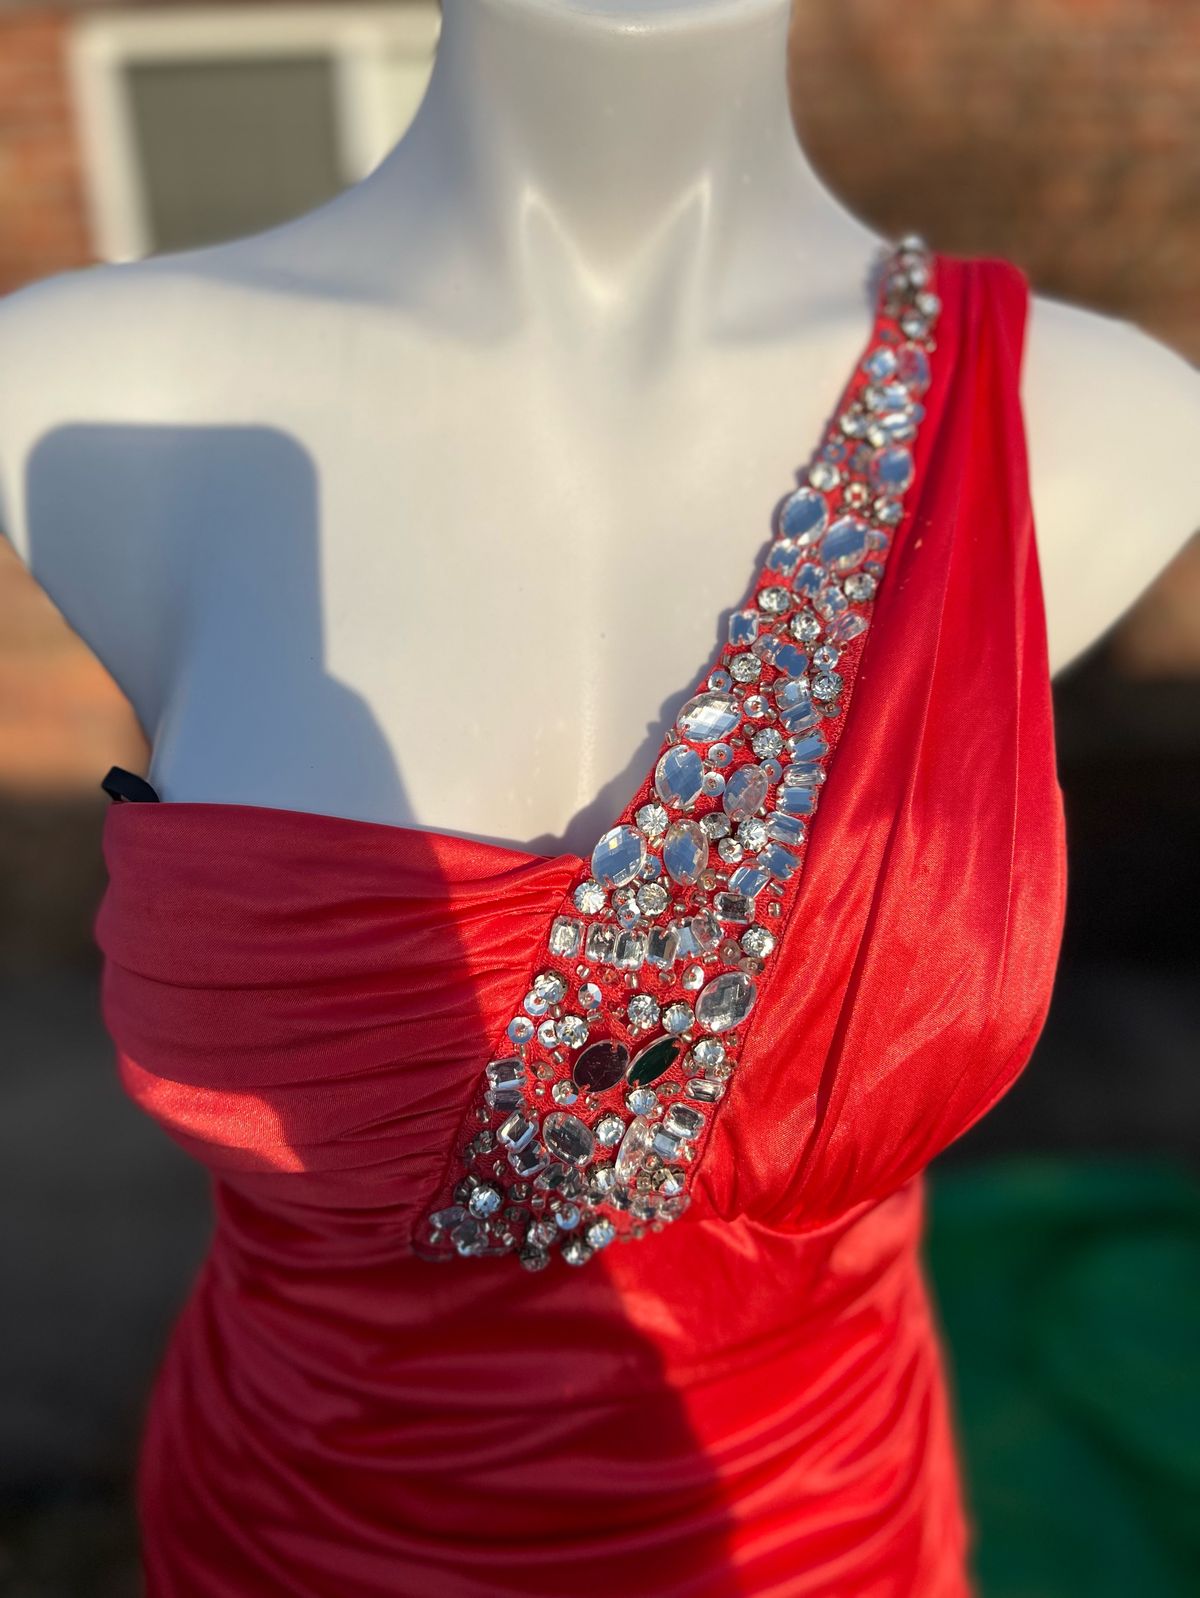 Size L Prom One Shoulder Coral Side Slit Dress on Queenly